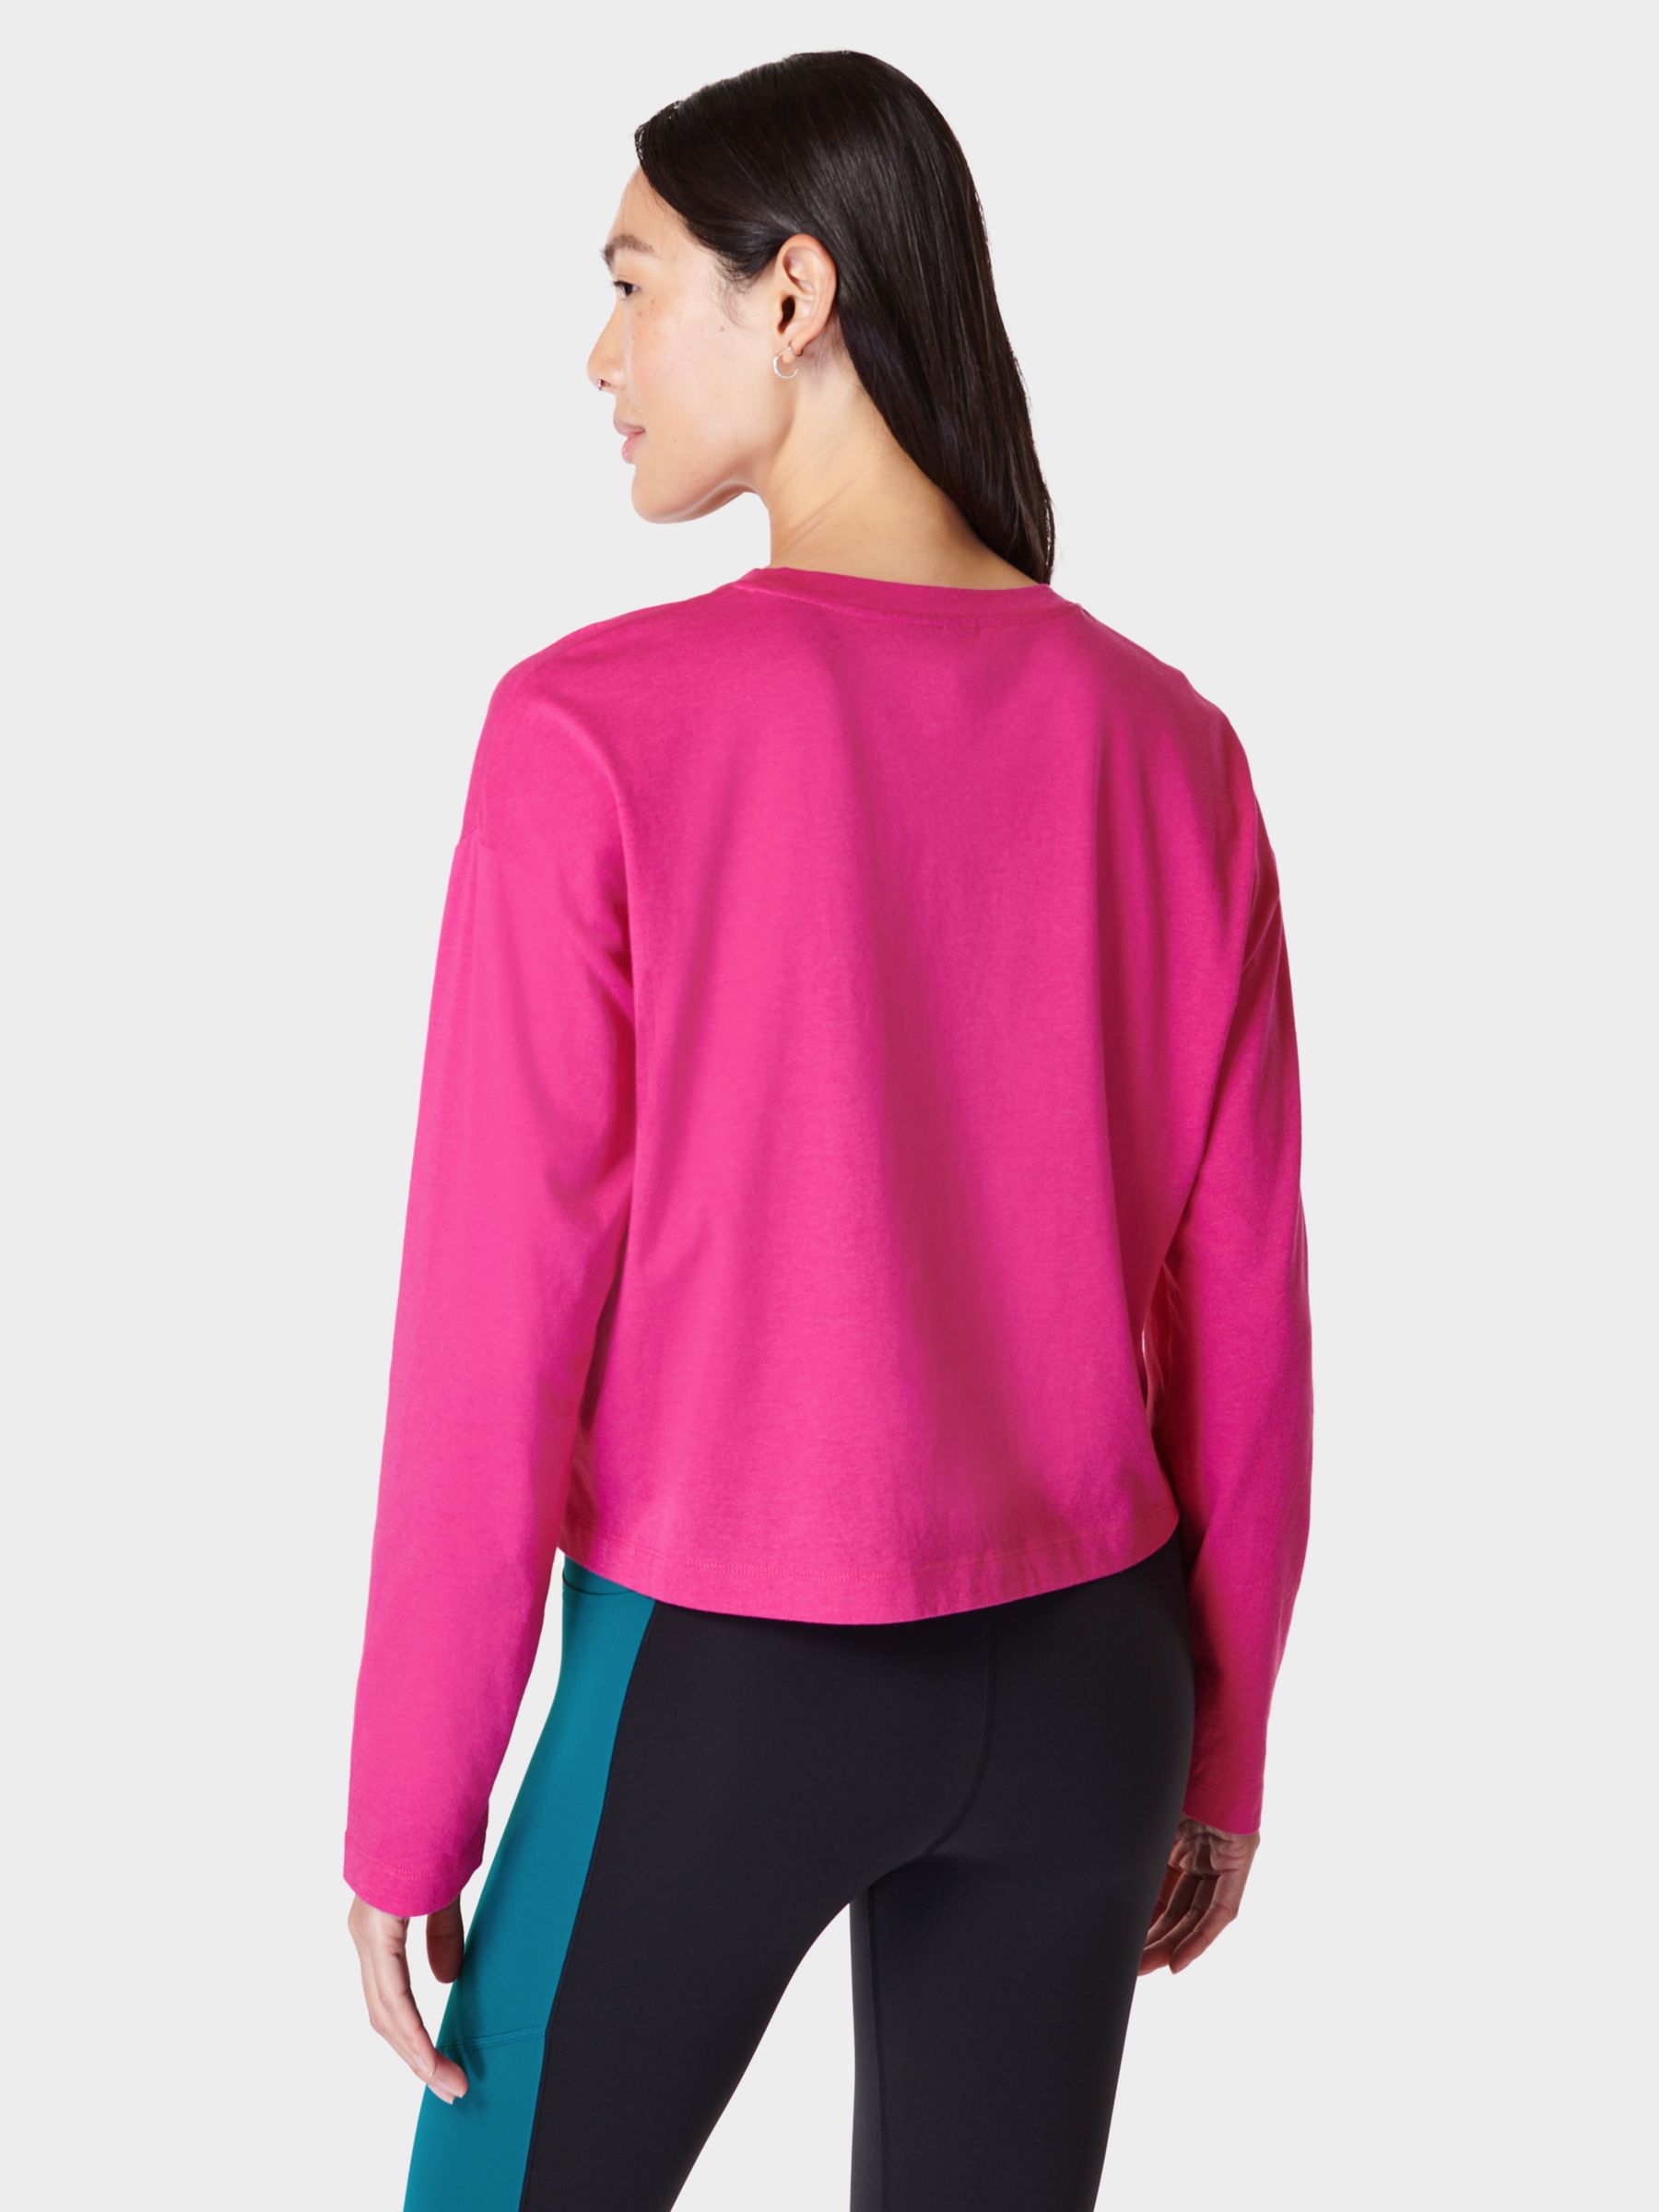 Sweaty Betty Essential Crop Long Sleeve T-Shirt, Beet Pink, XXS